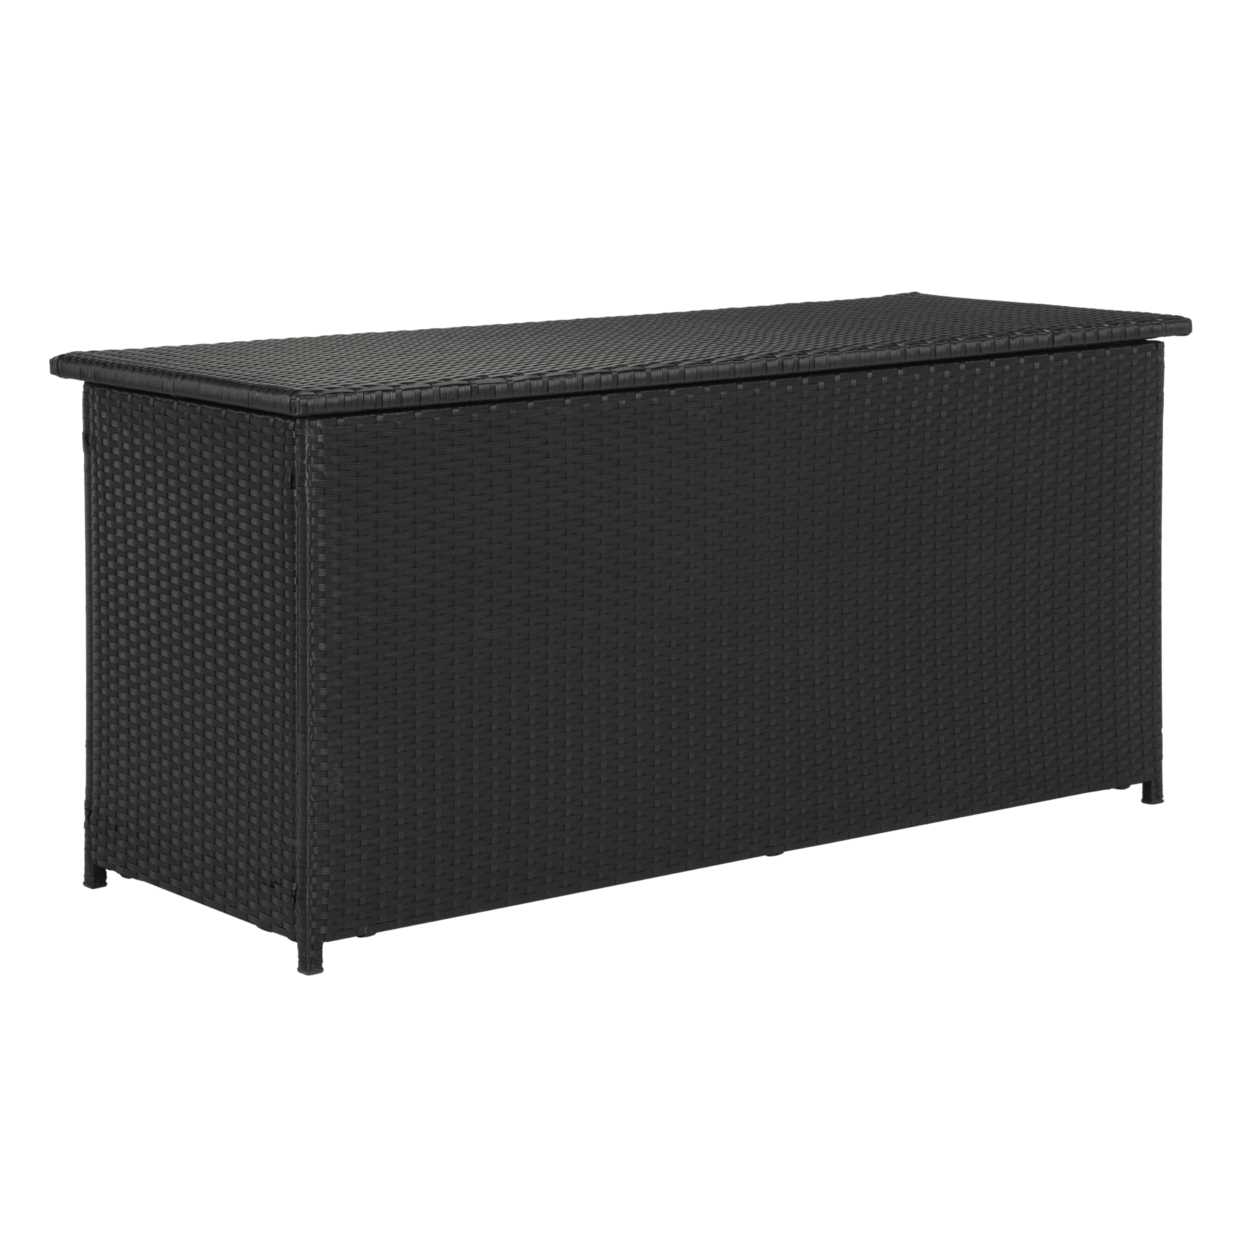 SAFAVIEH Outdoor Collection Cosima 53-inch Wide 13 Gallon Storage Box Black